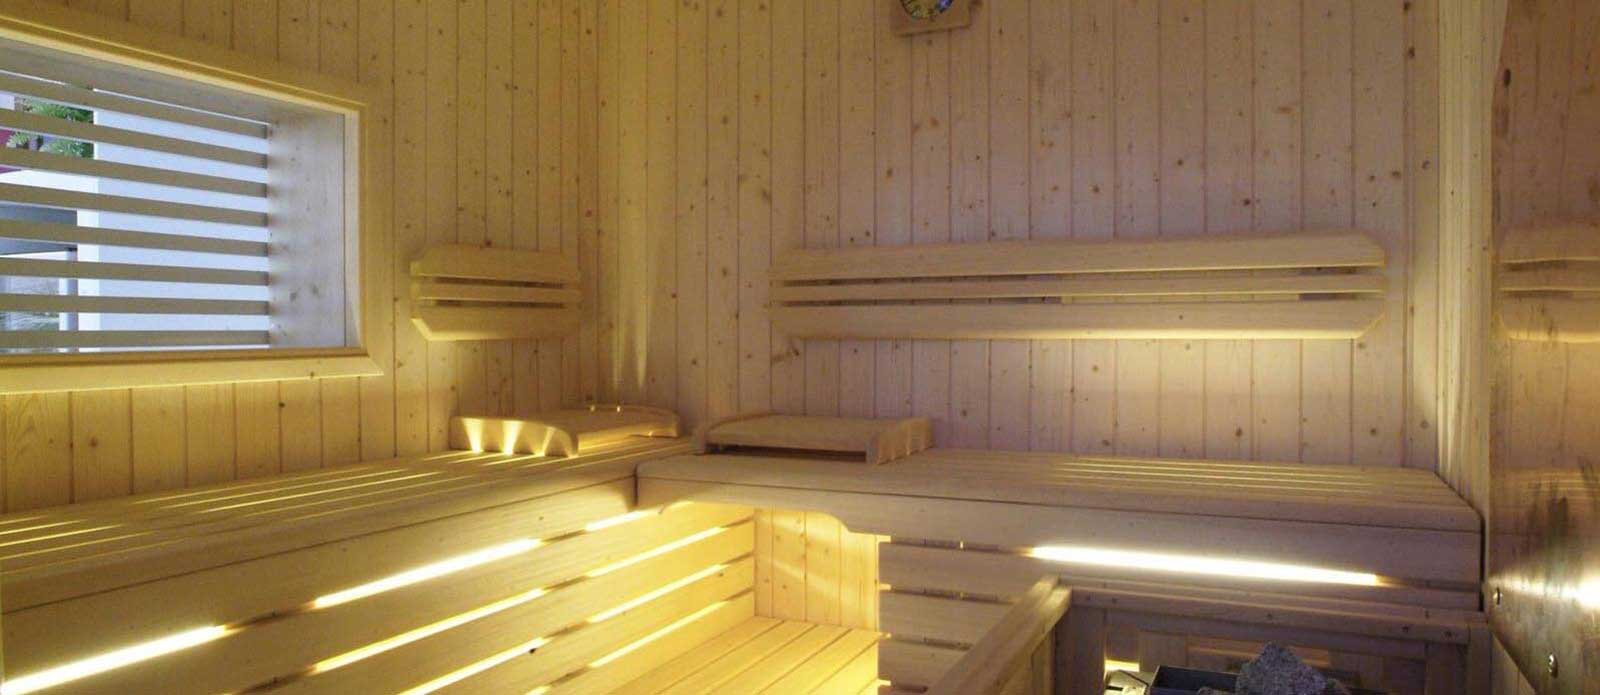 Motel K FantaSuite Antigua Sauna finlandese per 4 persone con illuminazione sotto alle sedute, camera a tema isole dei caraibi